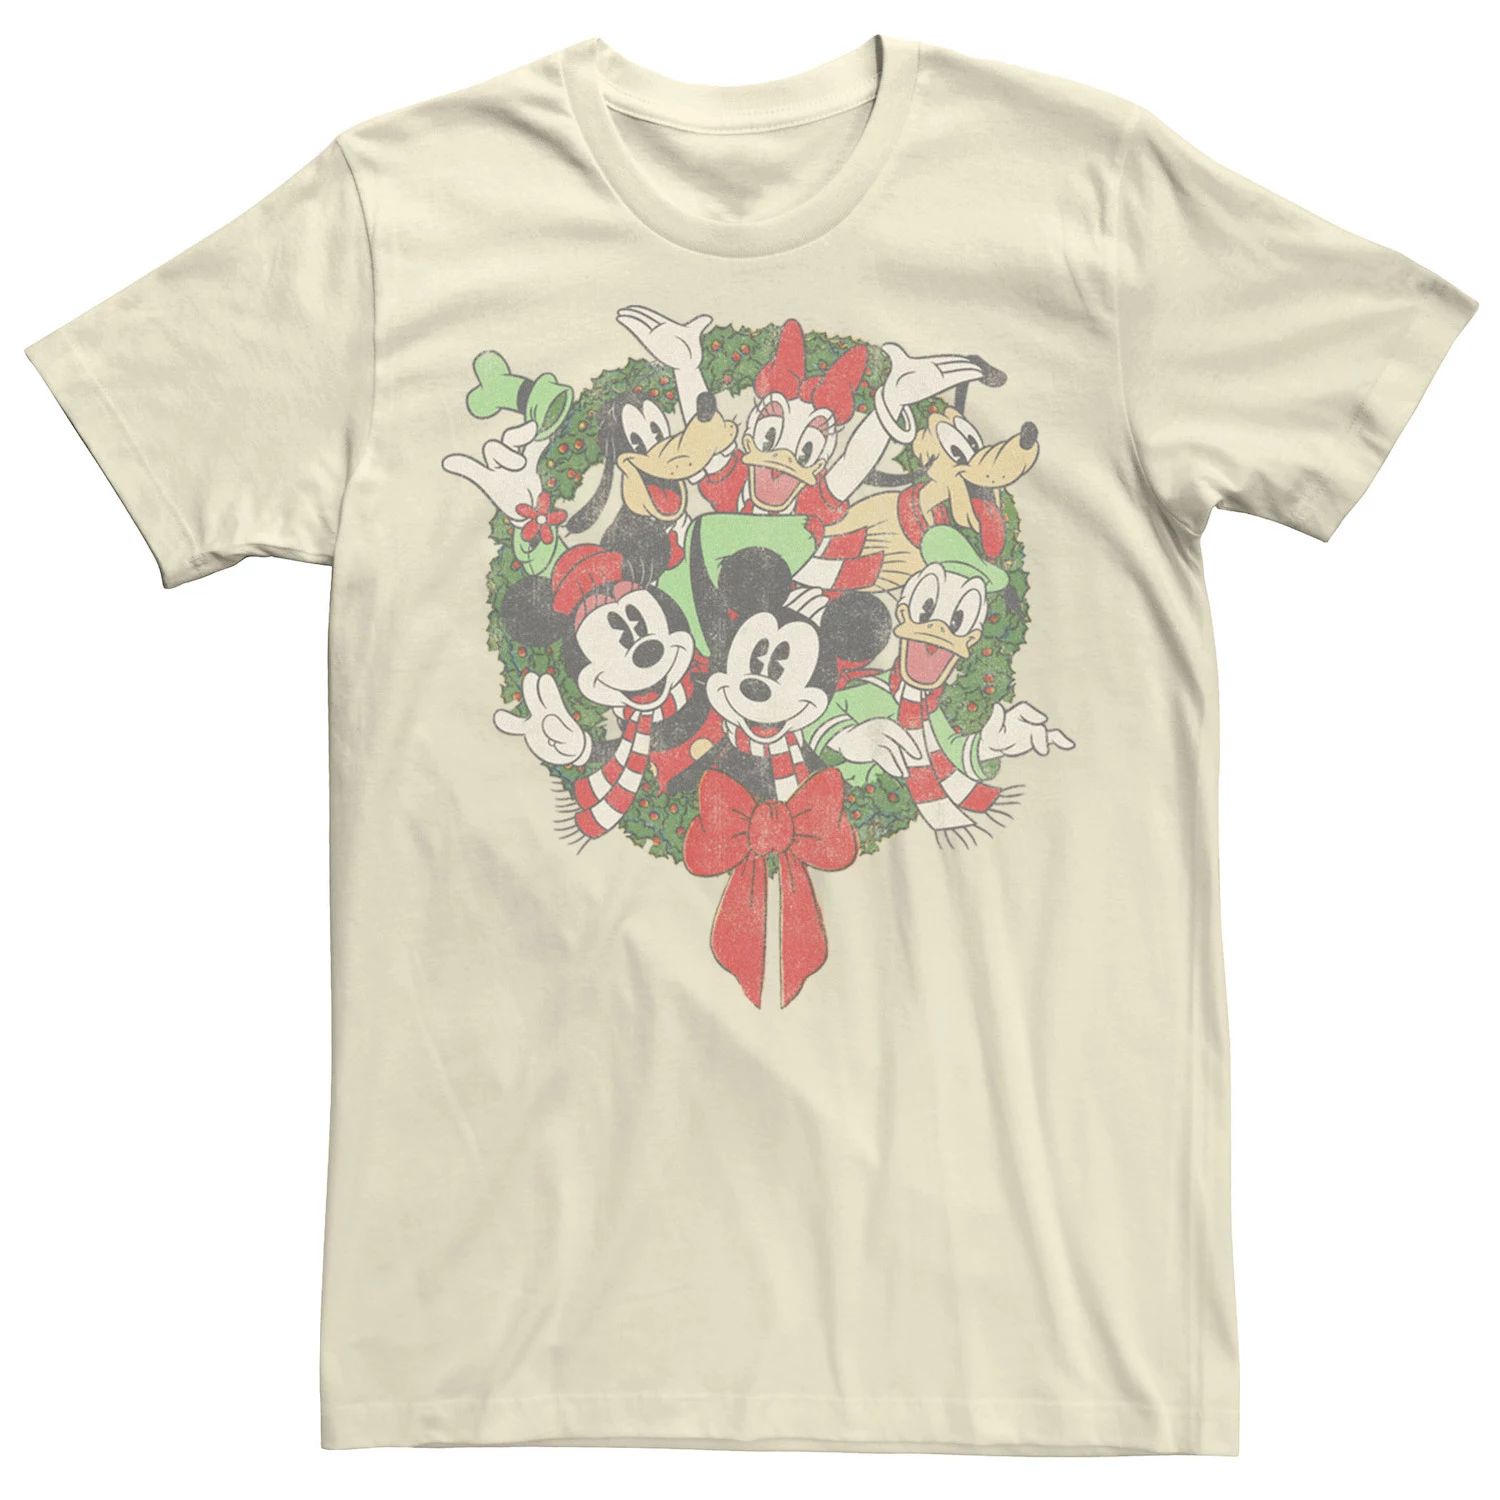 Мужская футболка с рождественским венком для групповых снимков Disney